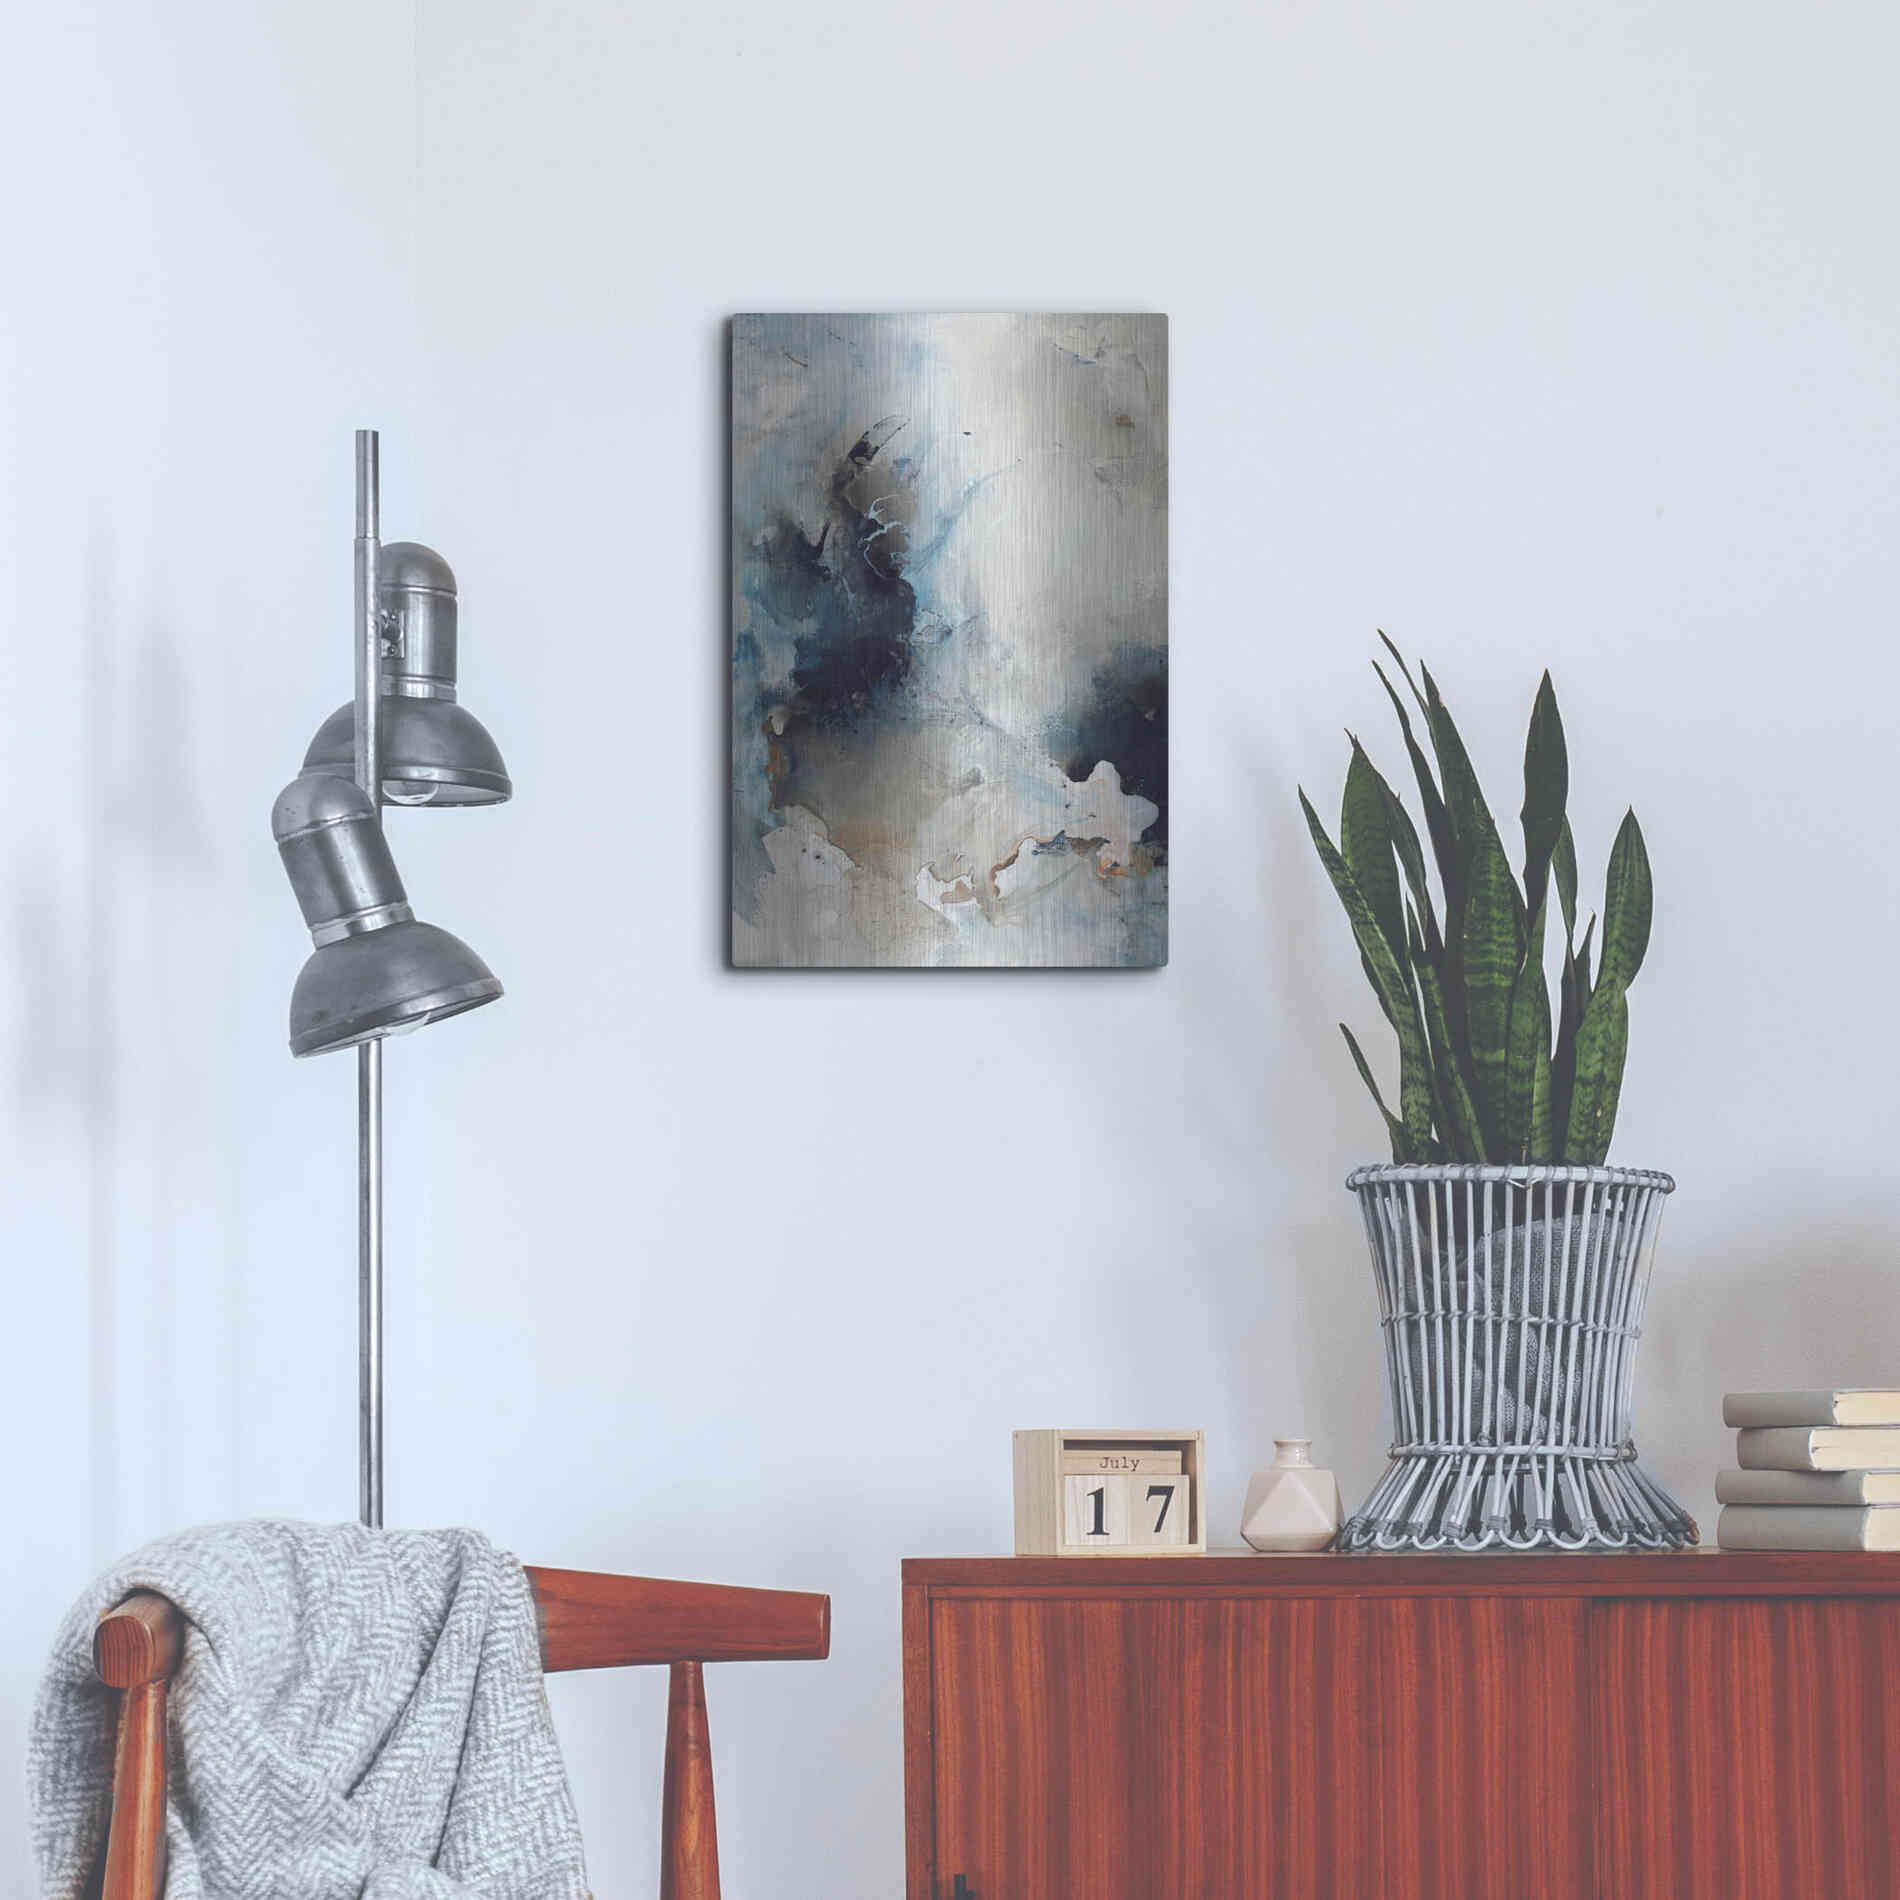 Luxe Metal Art 'Still Water 5' by Design Fabrikken, Metal Wall Art,16x24